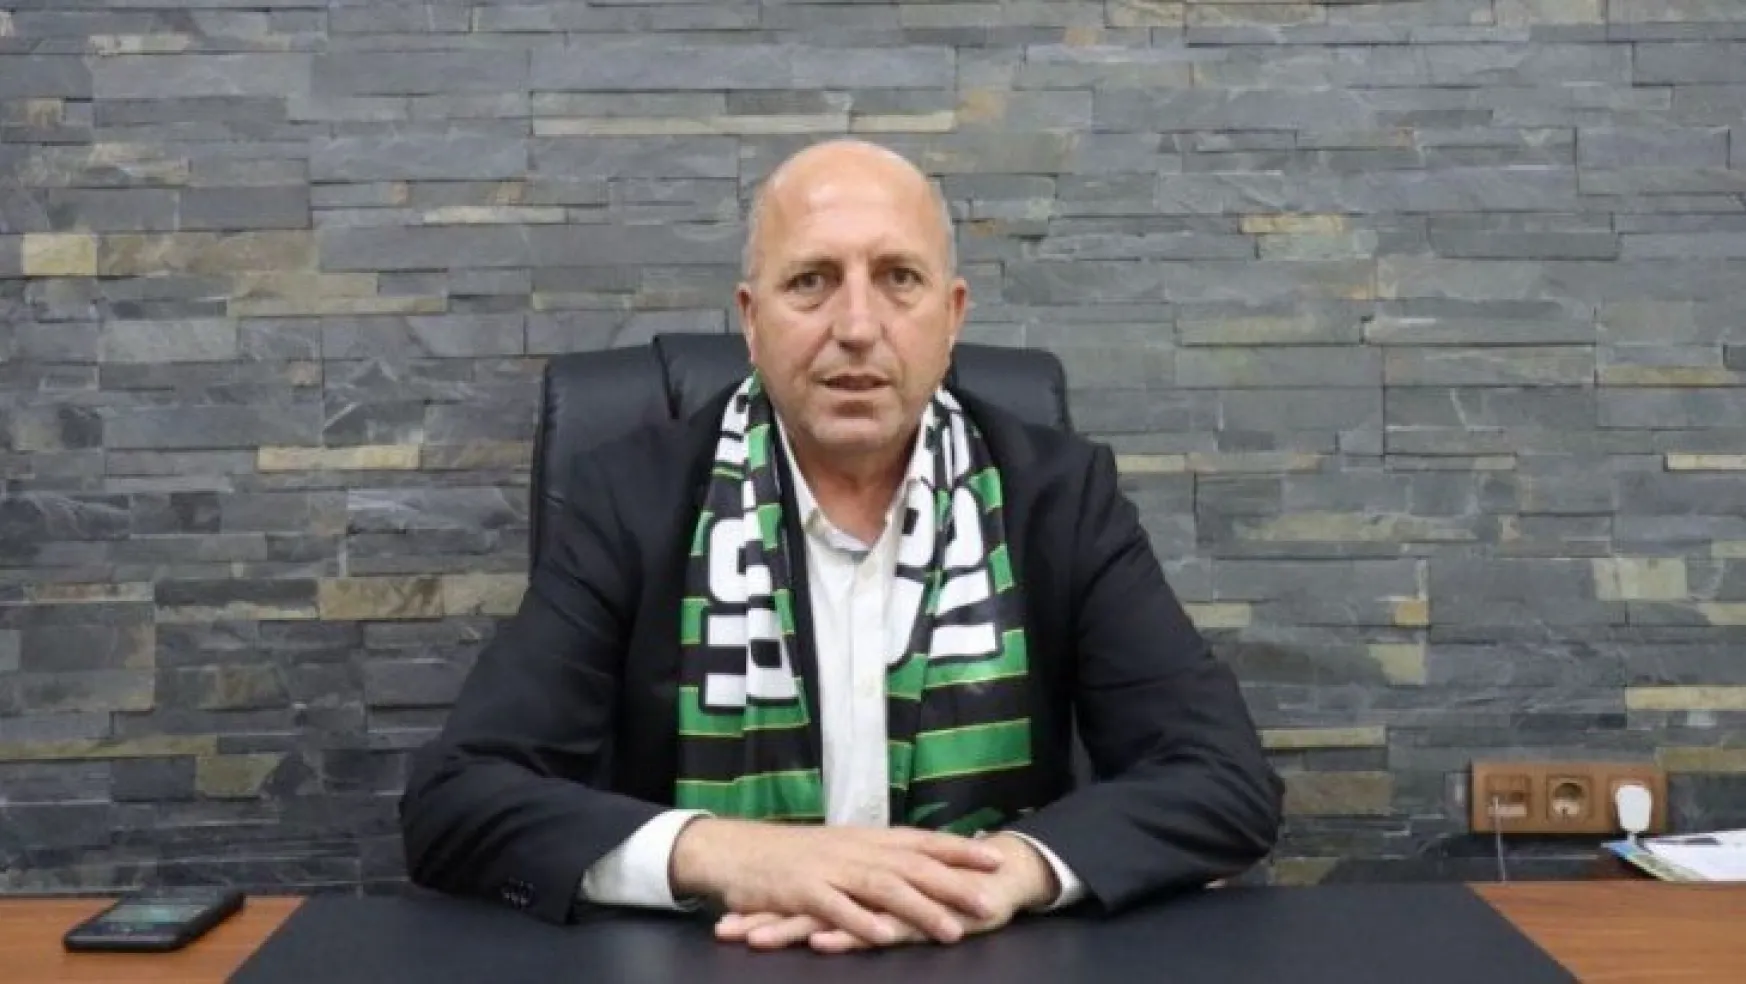 Kocaelispor'da hedef güçlü altyapı ve tesisleşme ile Süper Lig'e çıkmak